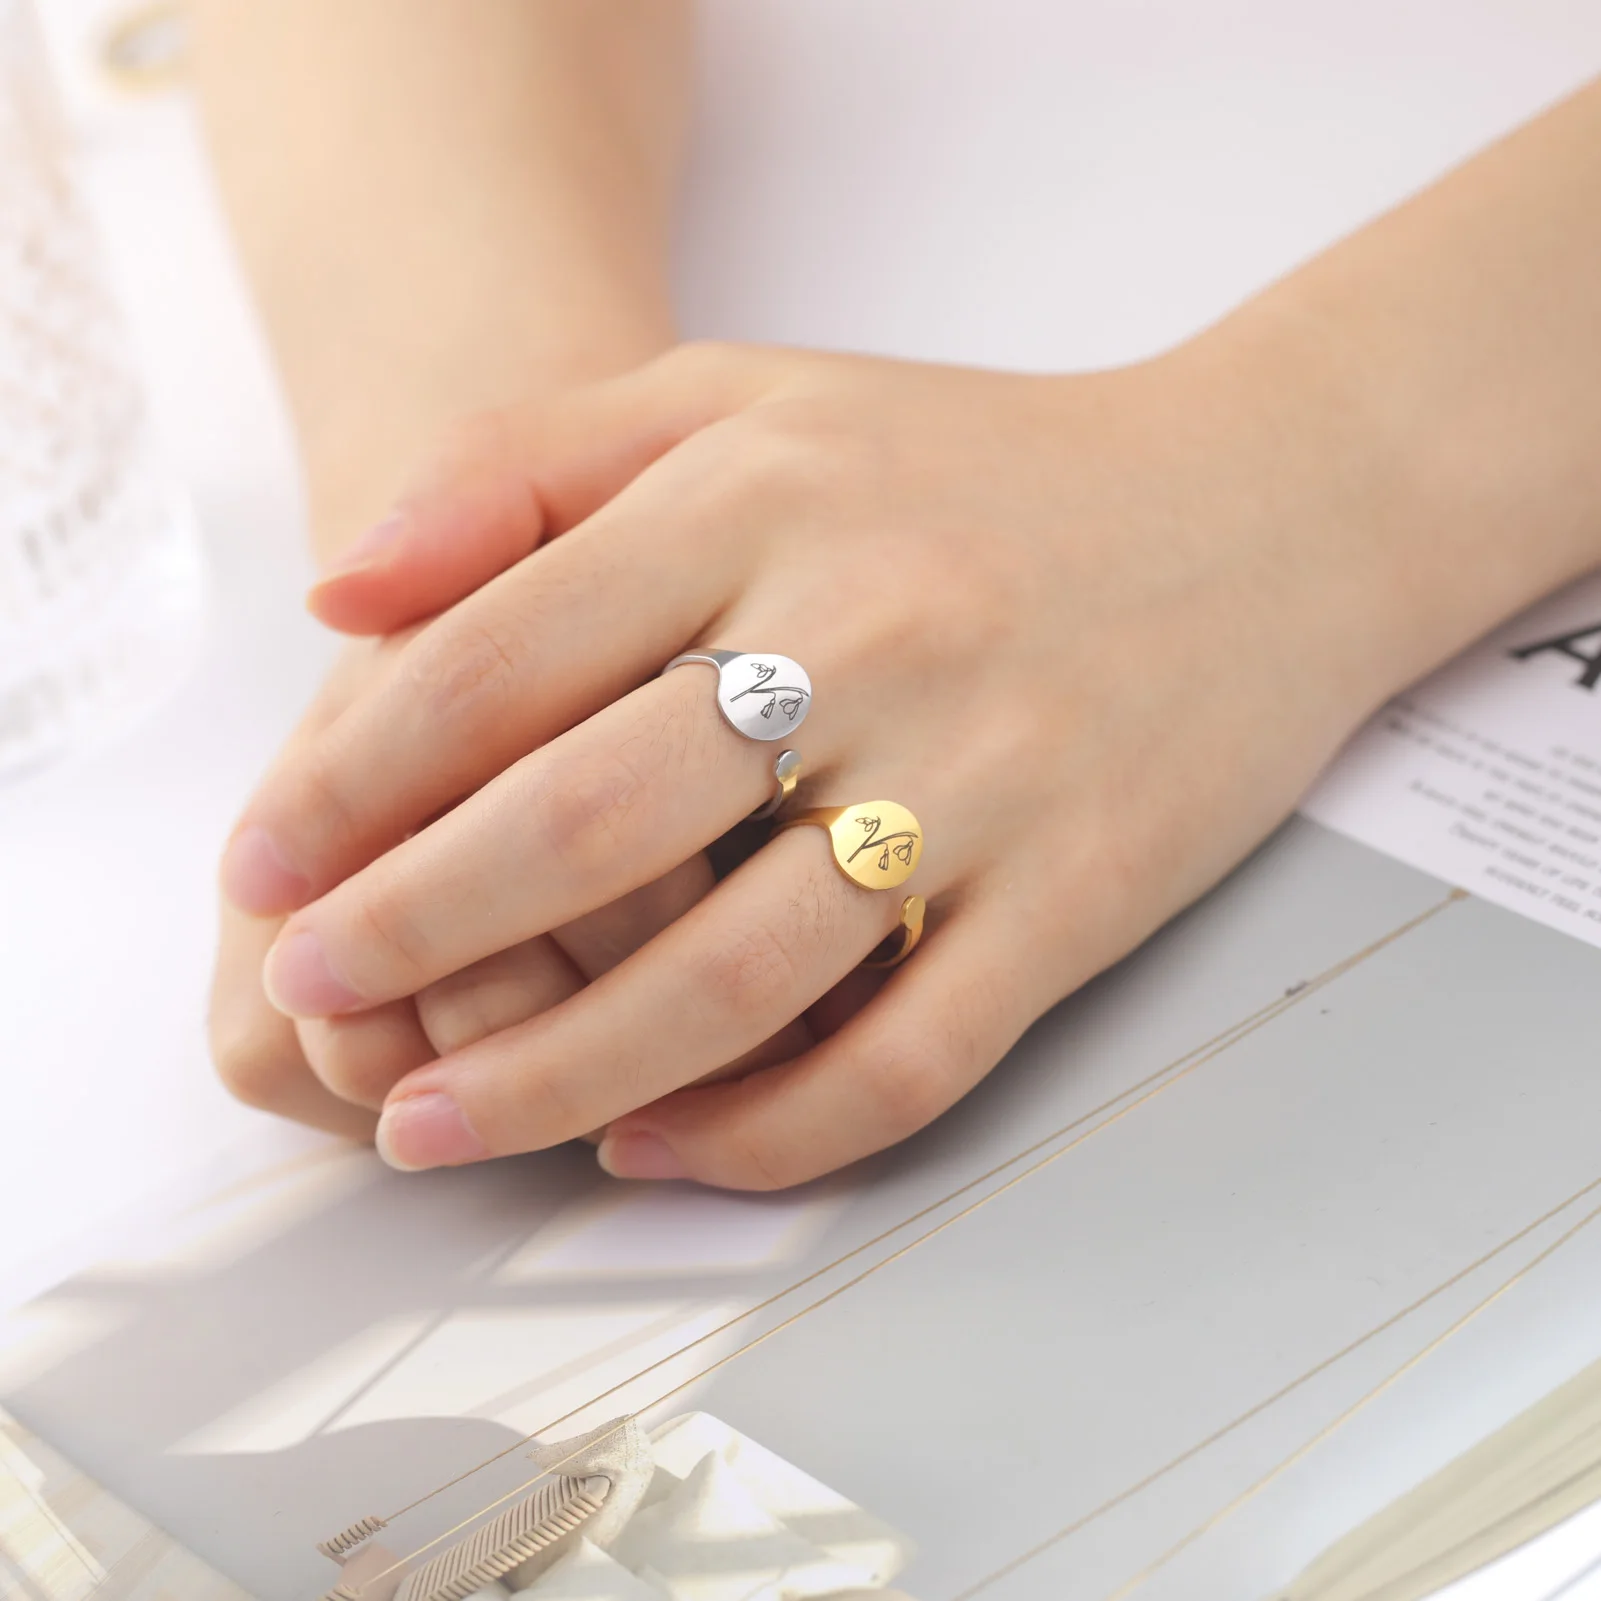 Skyrim Женские кольца-печатки с месяцем рождения, женские кольца-печатки изнержавеющей стали, подснежник, ромашка, открытое кольцо на палец,эстетические украшения, подарок на день рождения